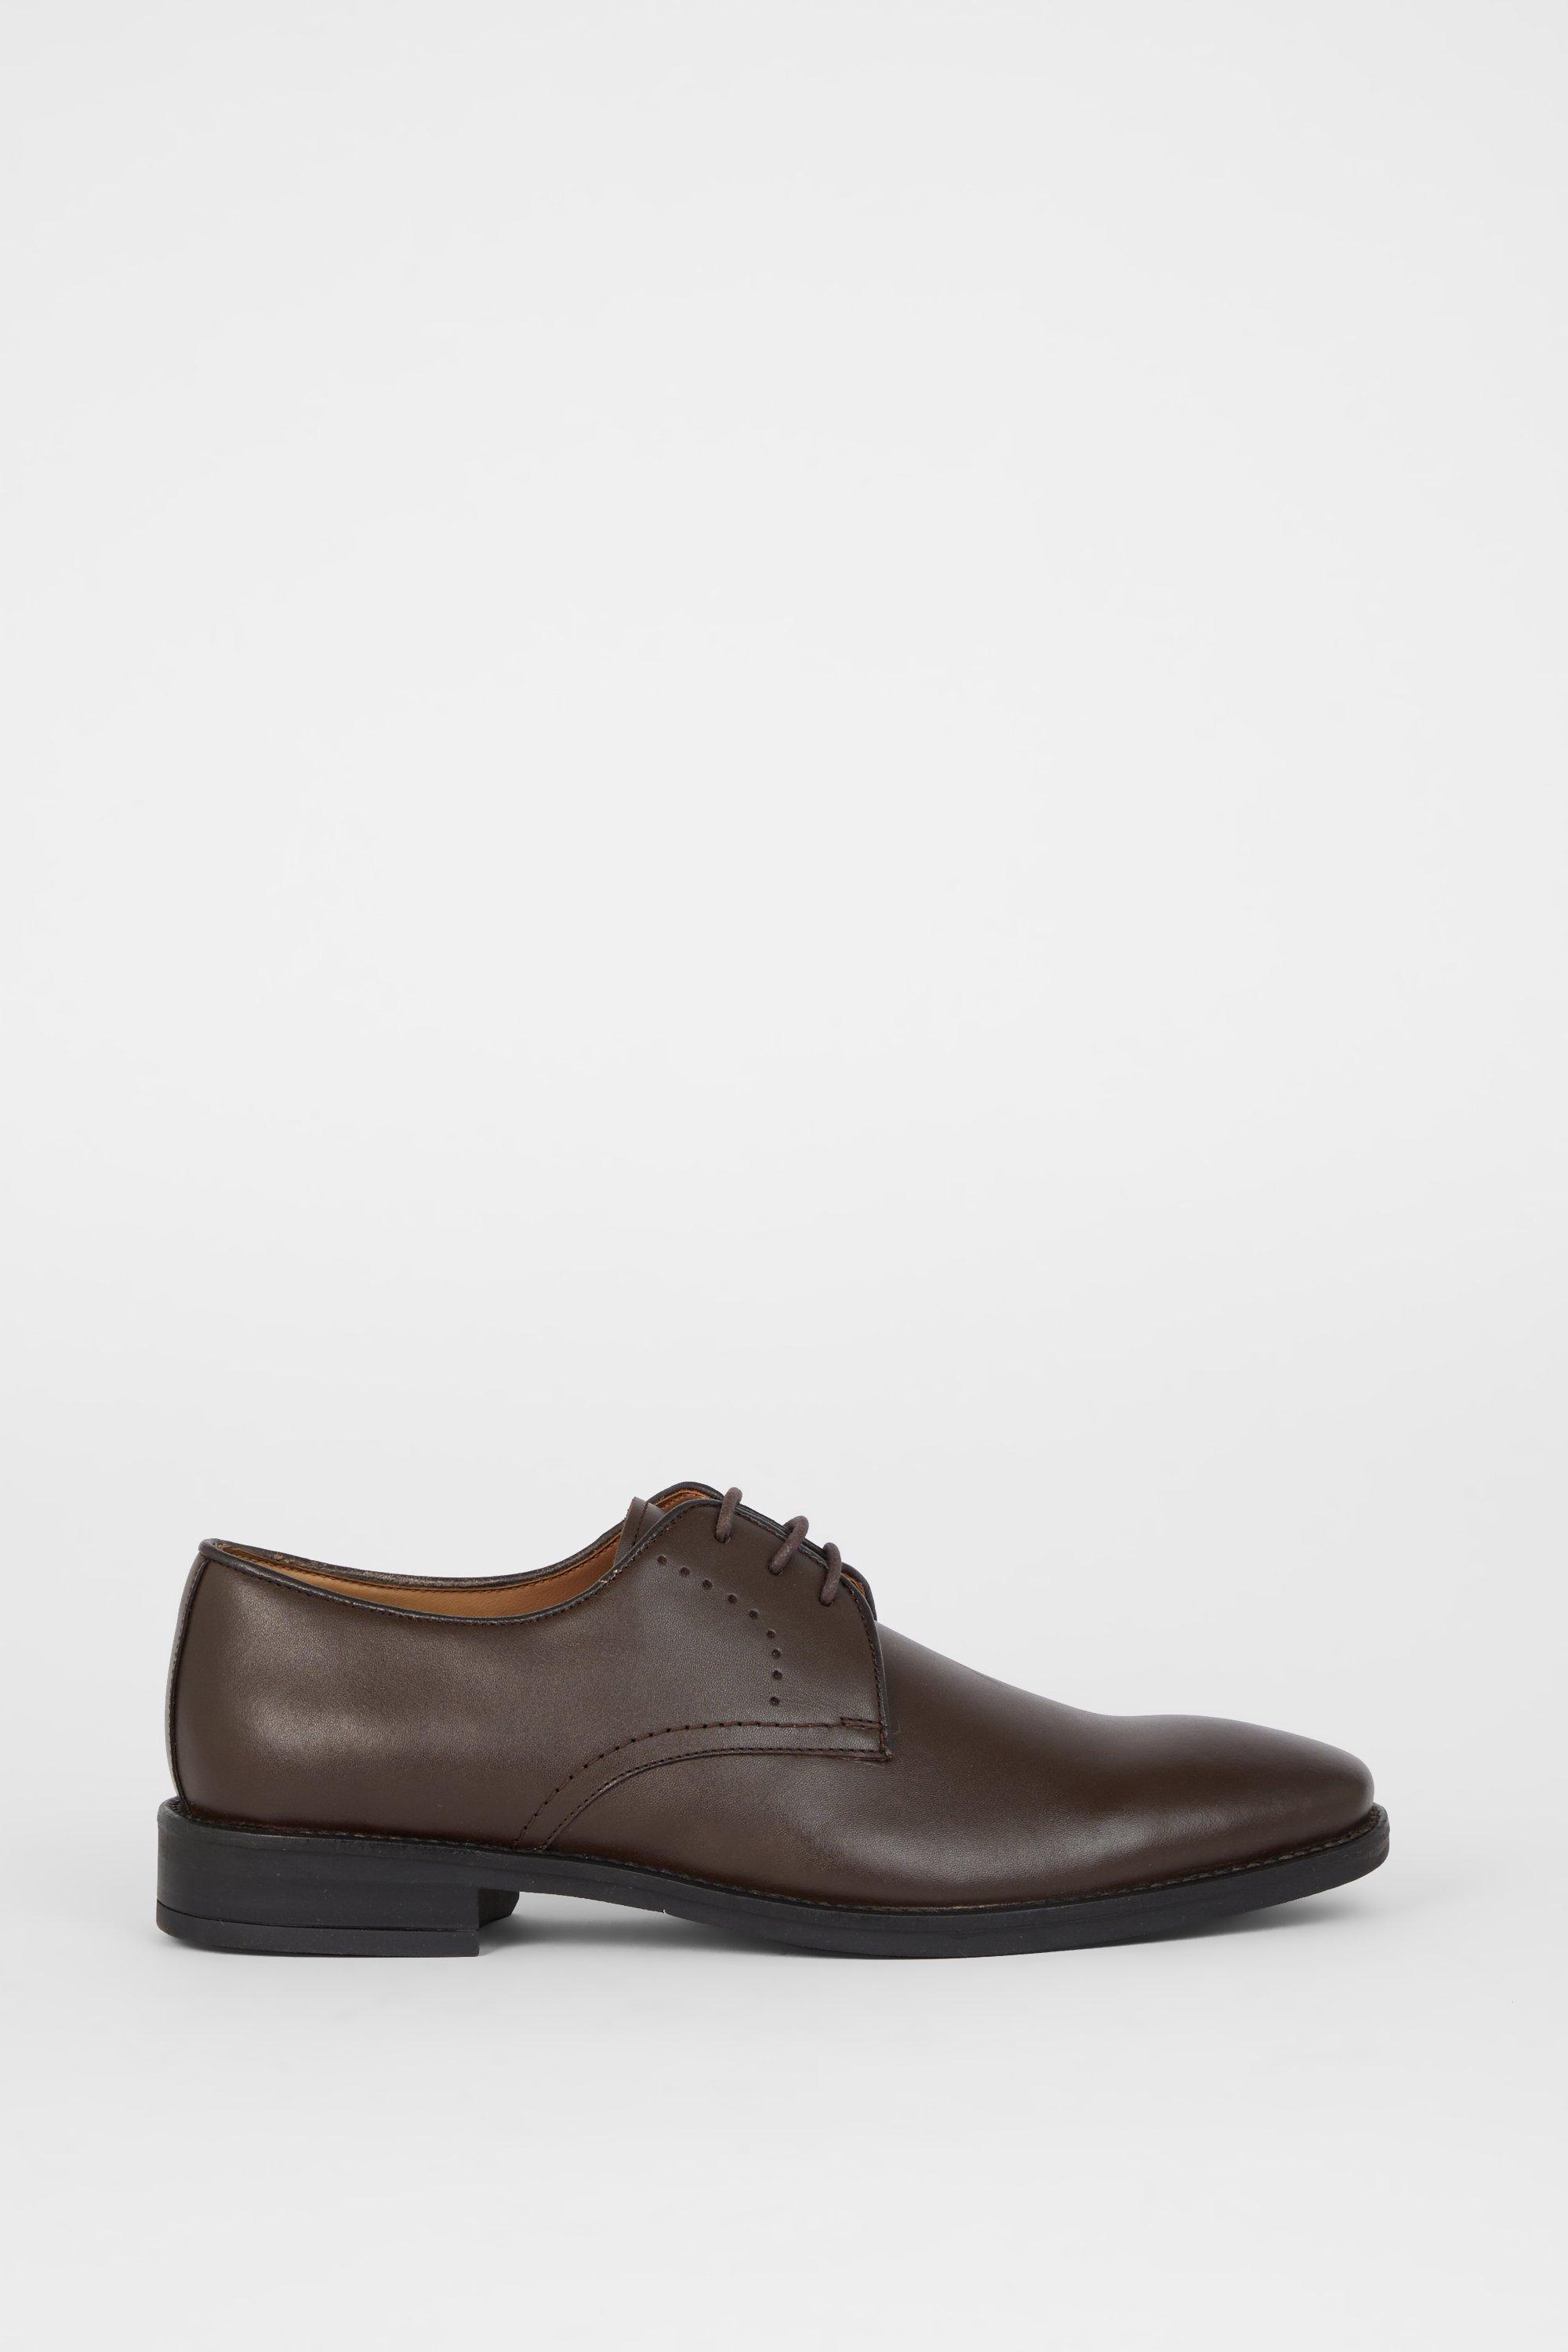 Кожаные туфли дерби Airsoft Comfort с перфорацией на шнуровке Debenhams, коричневый ботинки дерби кожаные на шнуровке 39 черный